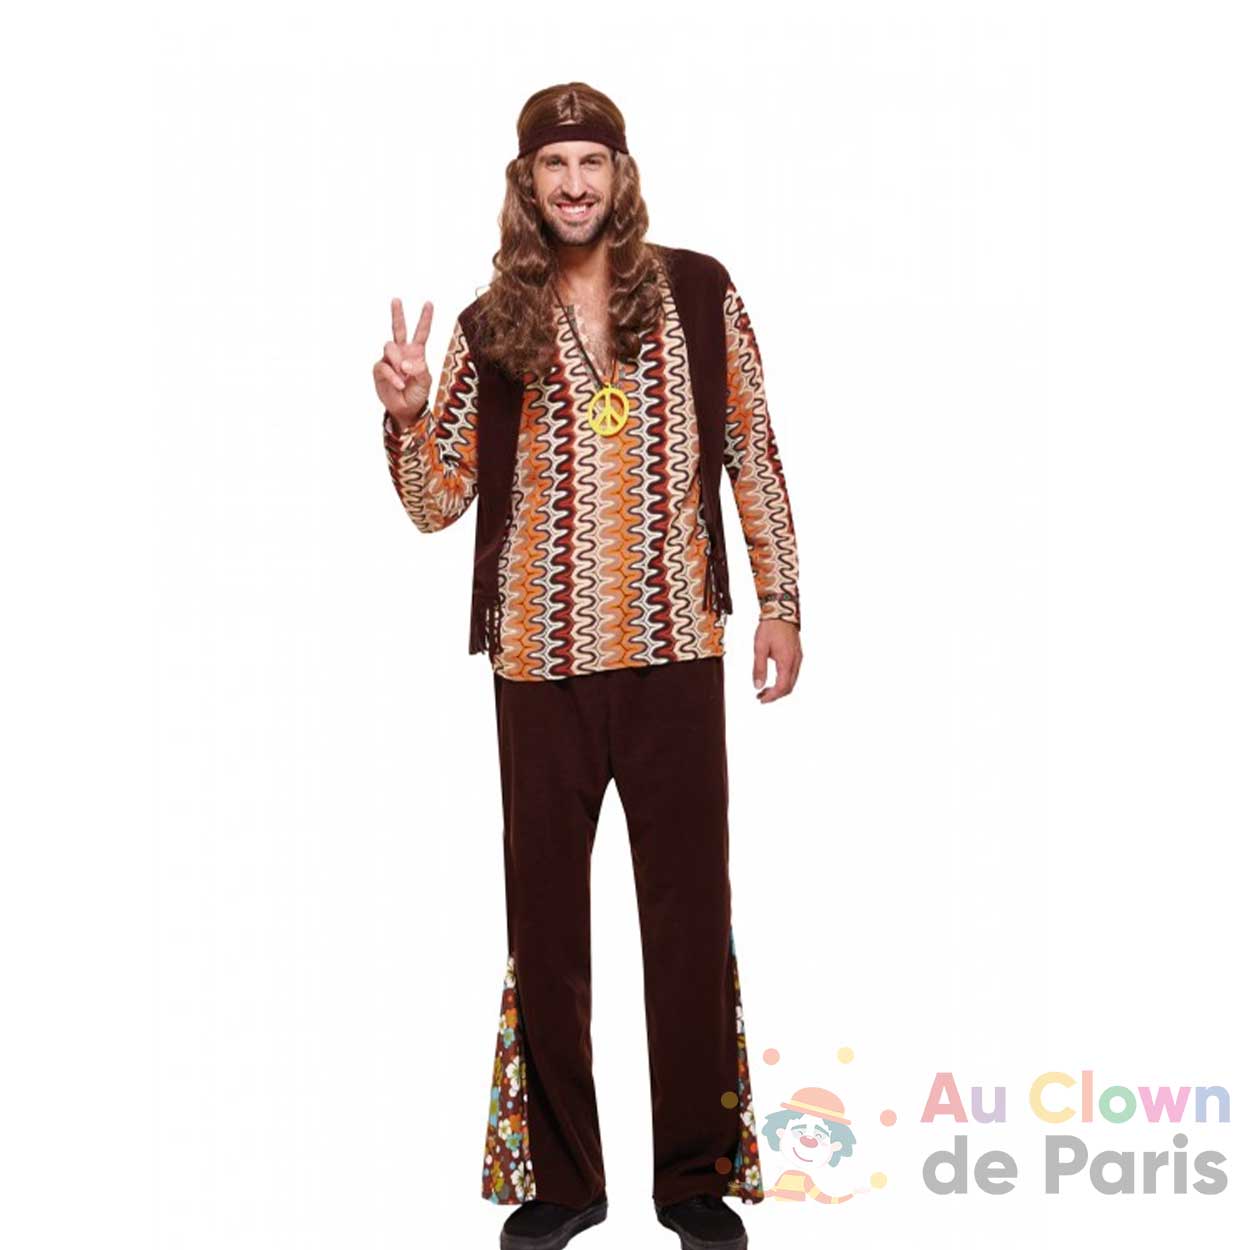 Déguisement Hippie marron homme - Au Clown de Paris